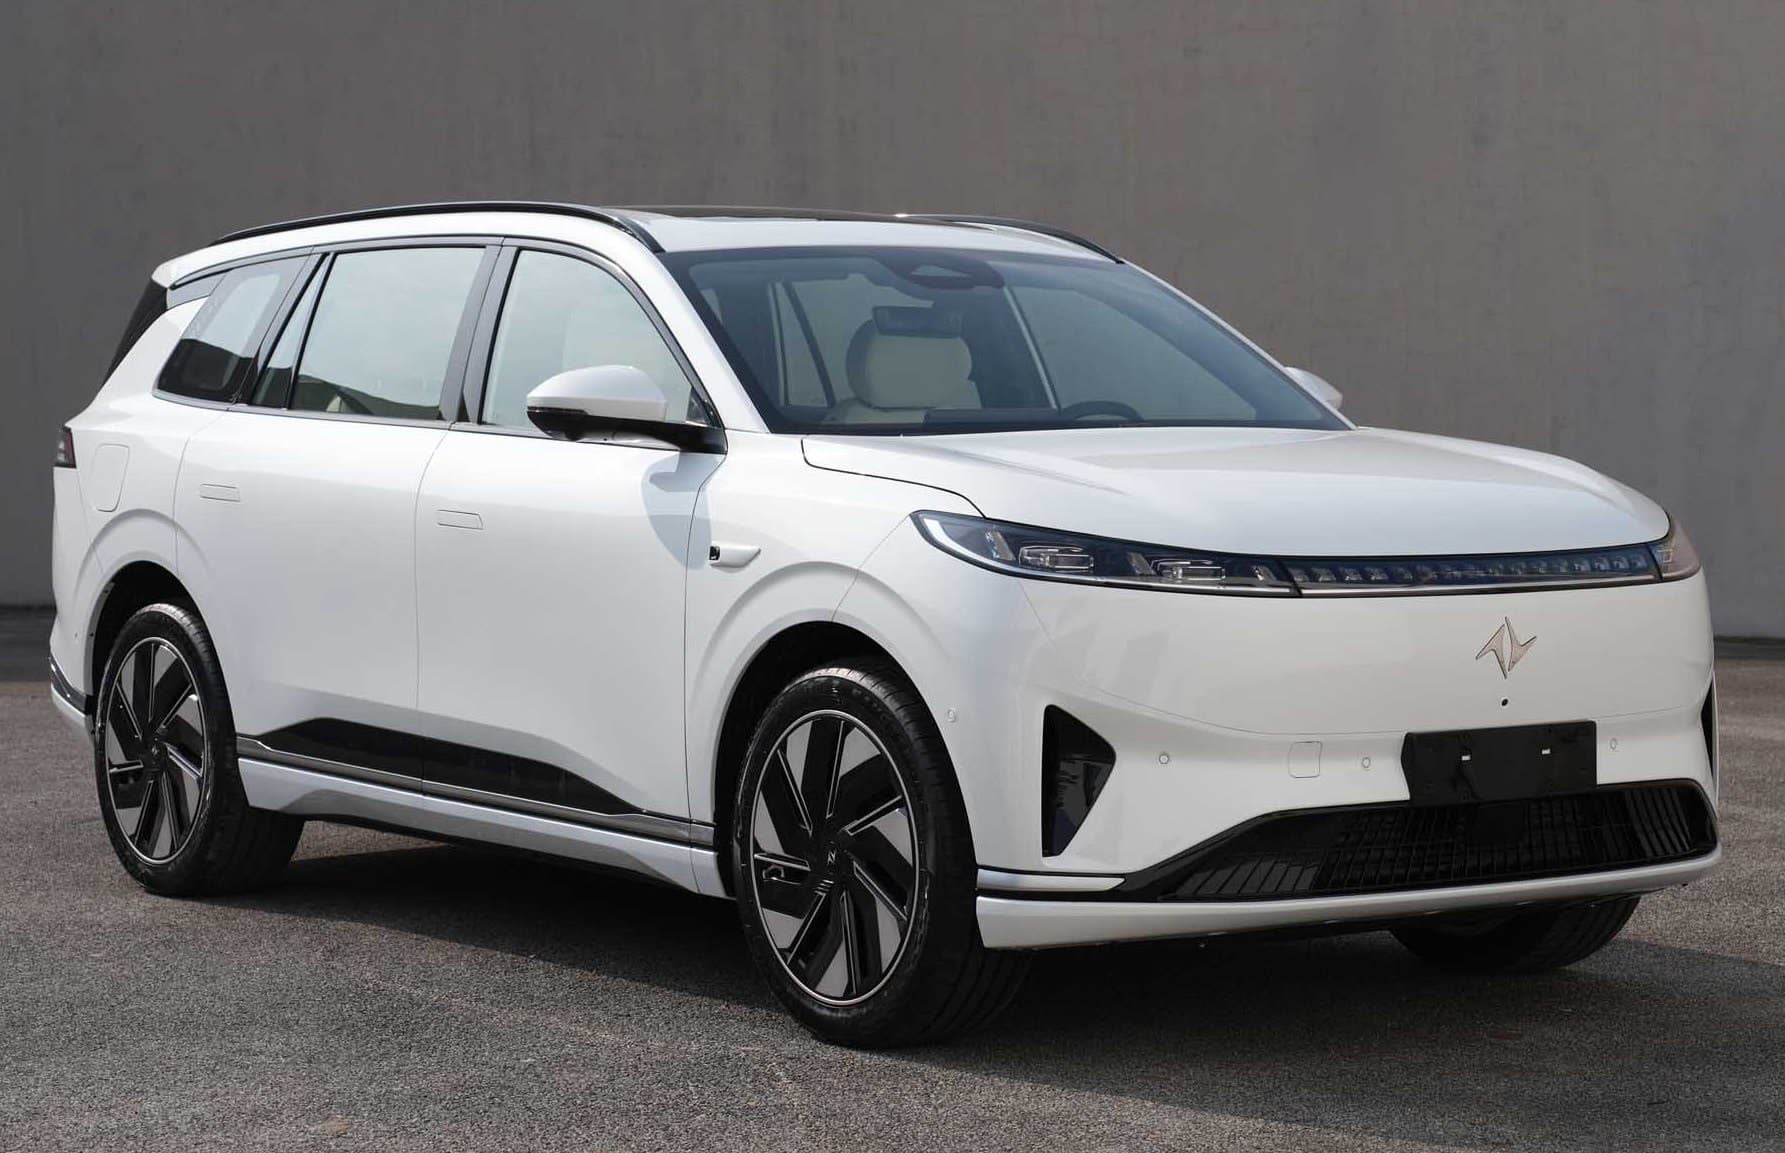 «eπ» — это новый бренд электромобилей высокого класса под брендом Dongfeng Aeolus, представленный в апреле прошлого года на Шанхайском автосалоне. eπ 007 — ее первый автомобиль, дебютировавший в прошлом году 10 ноября в Китае. Поставки начнутся в мар